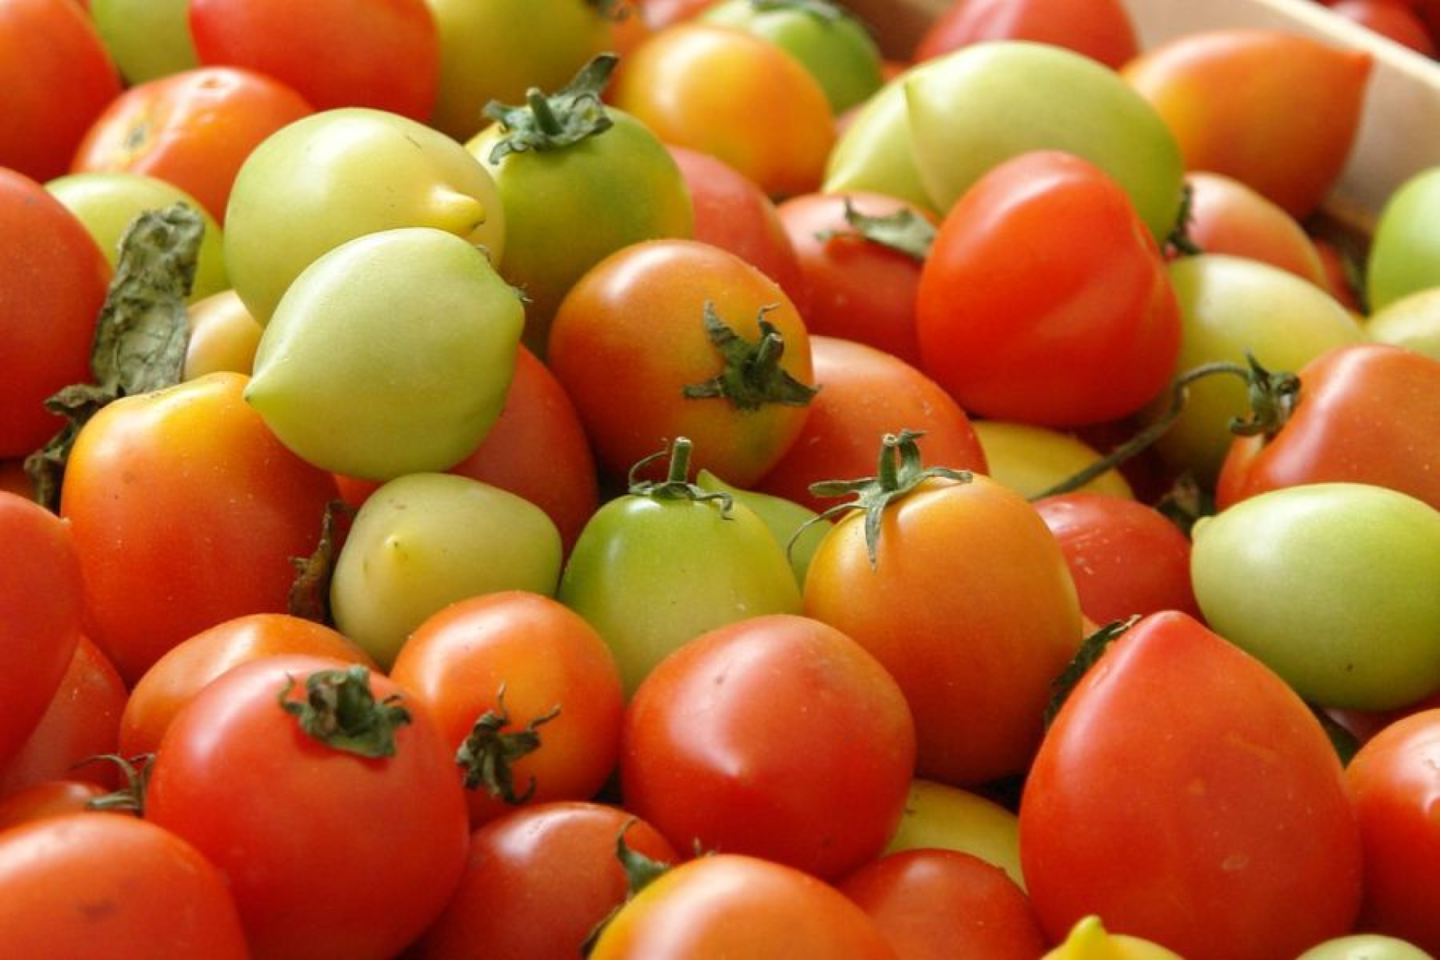 Kai pomidorai – patys aromatingiausi, metas iš jų gaminti padažą.<br> Nuotr. iš valgiai.lt